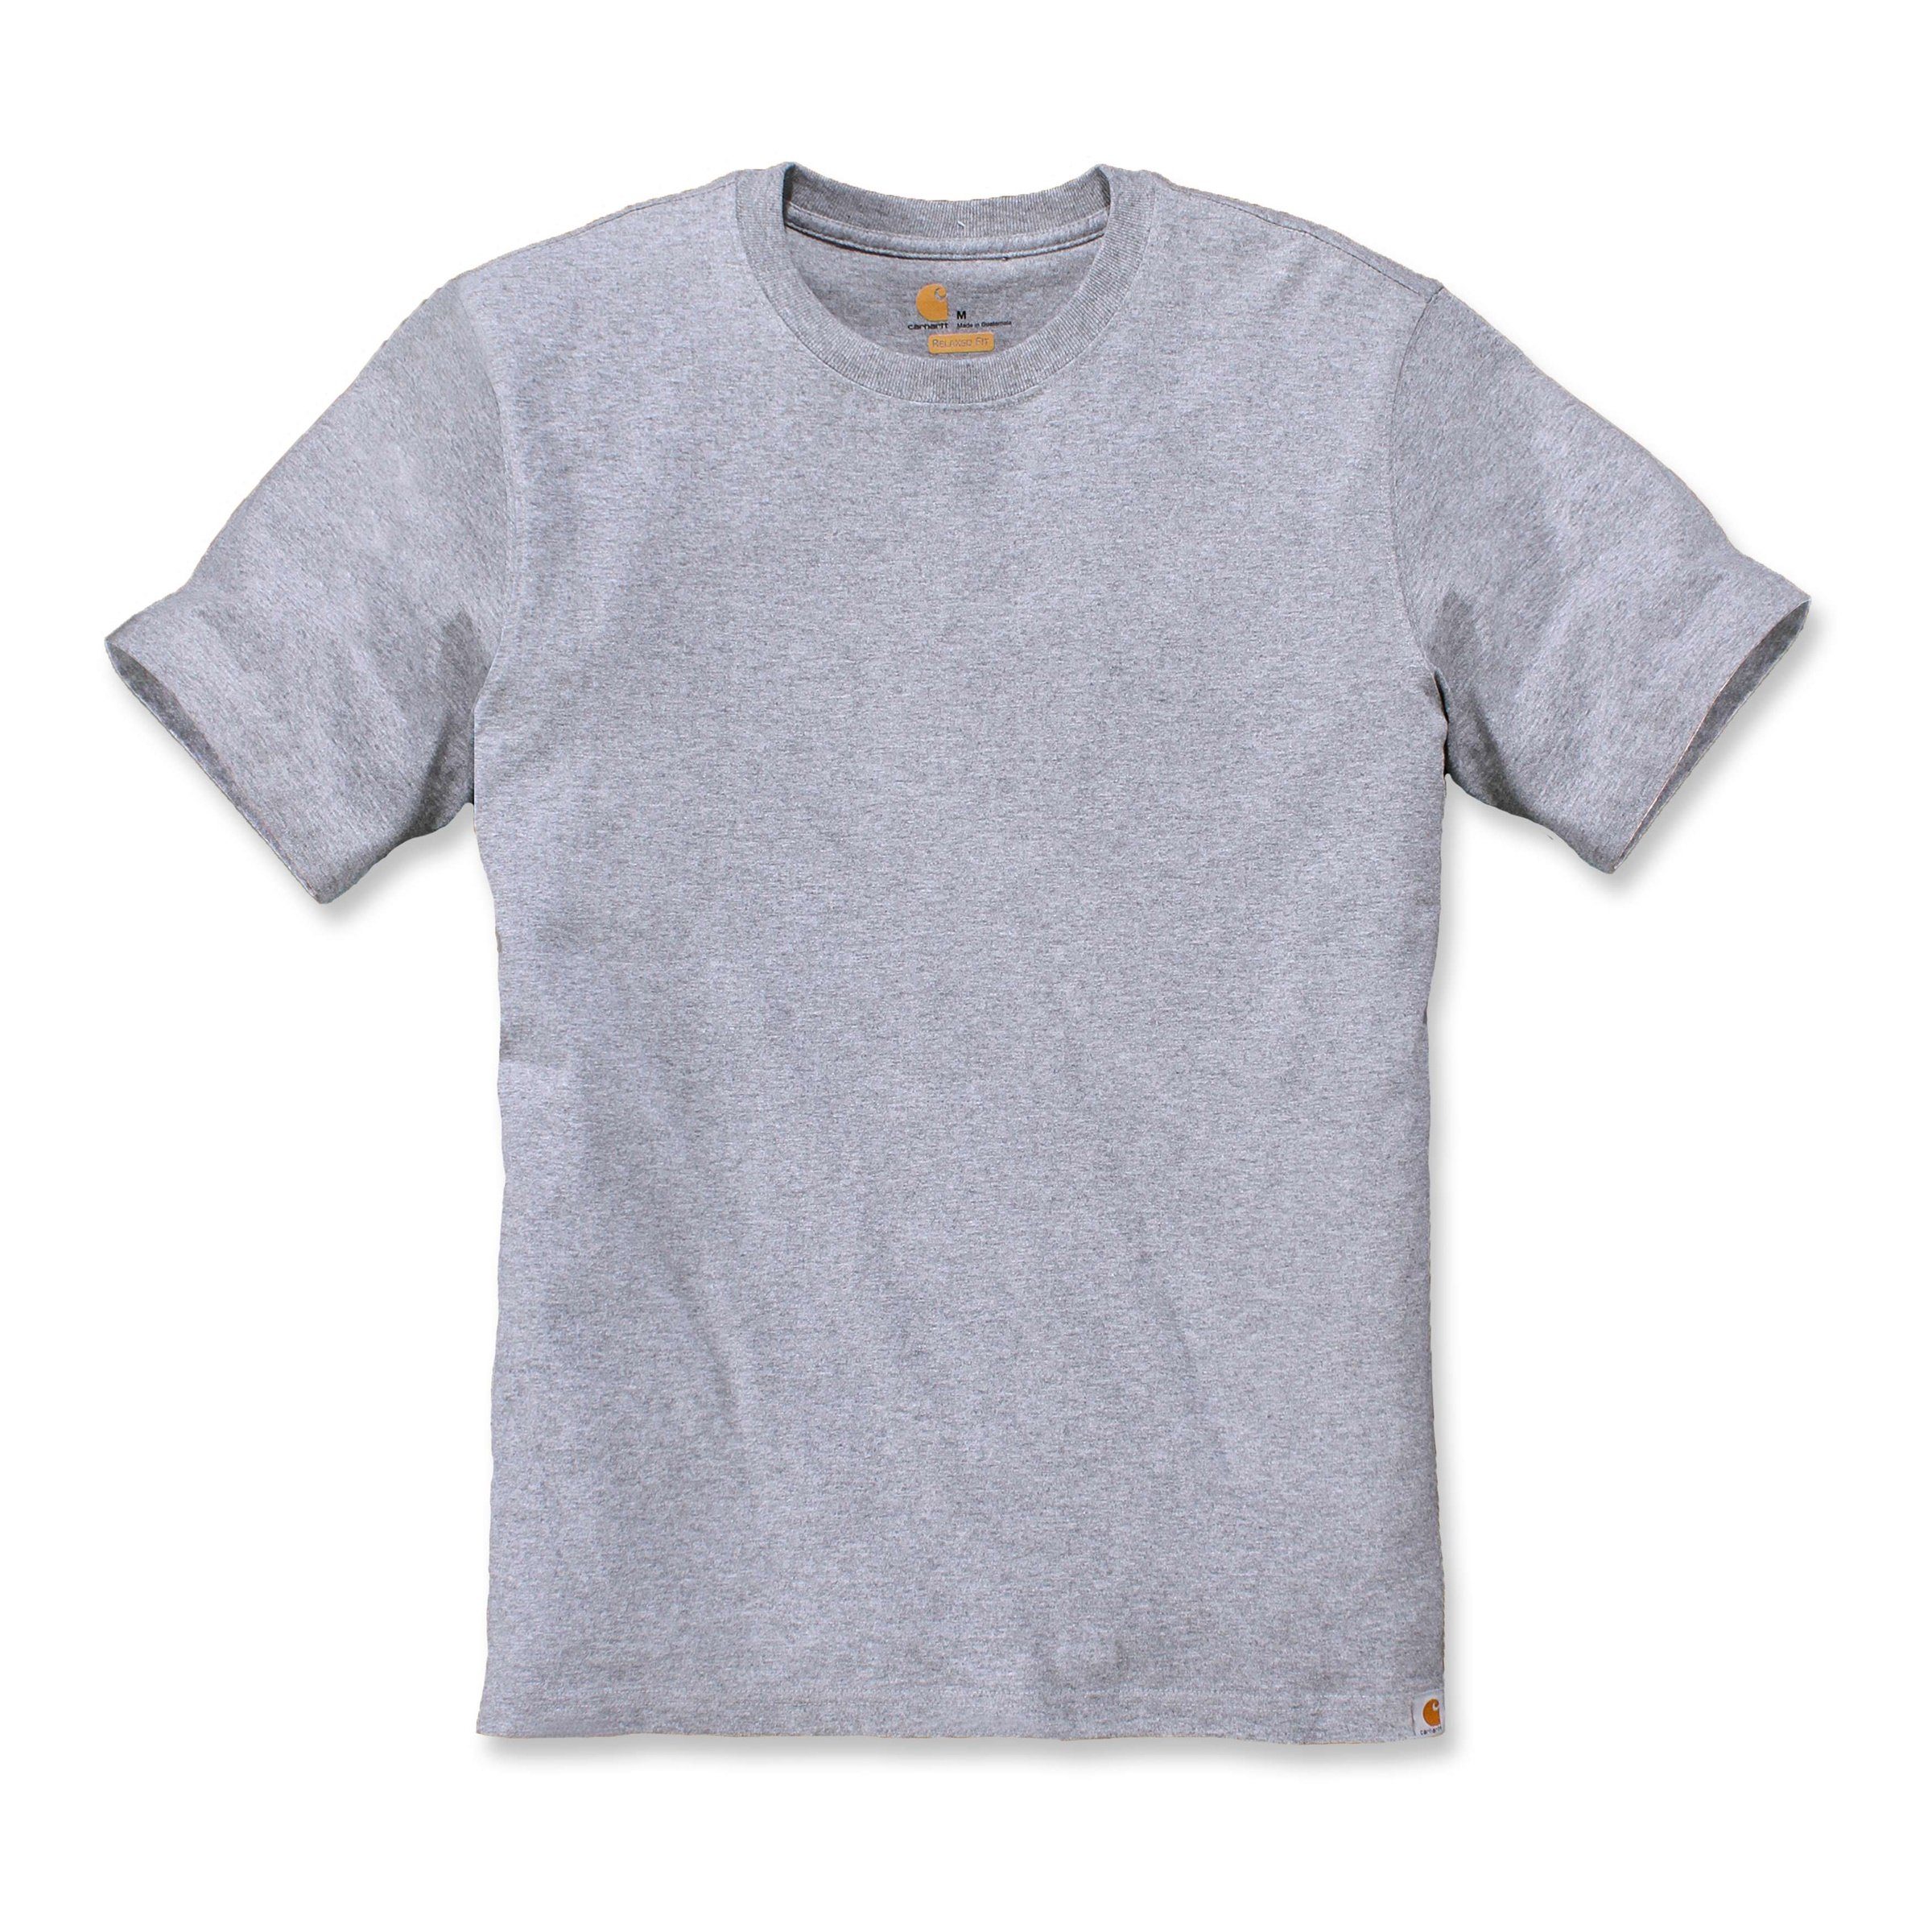 Carhartt Fit Heavyweight Carhartt white Relaxed Short-Sleeve Herren T-Shirt T-Shirt Adult